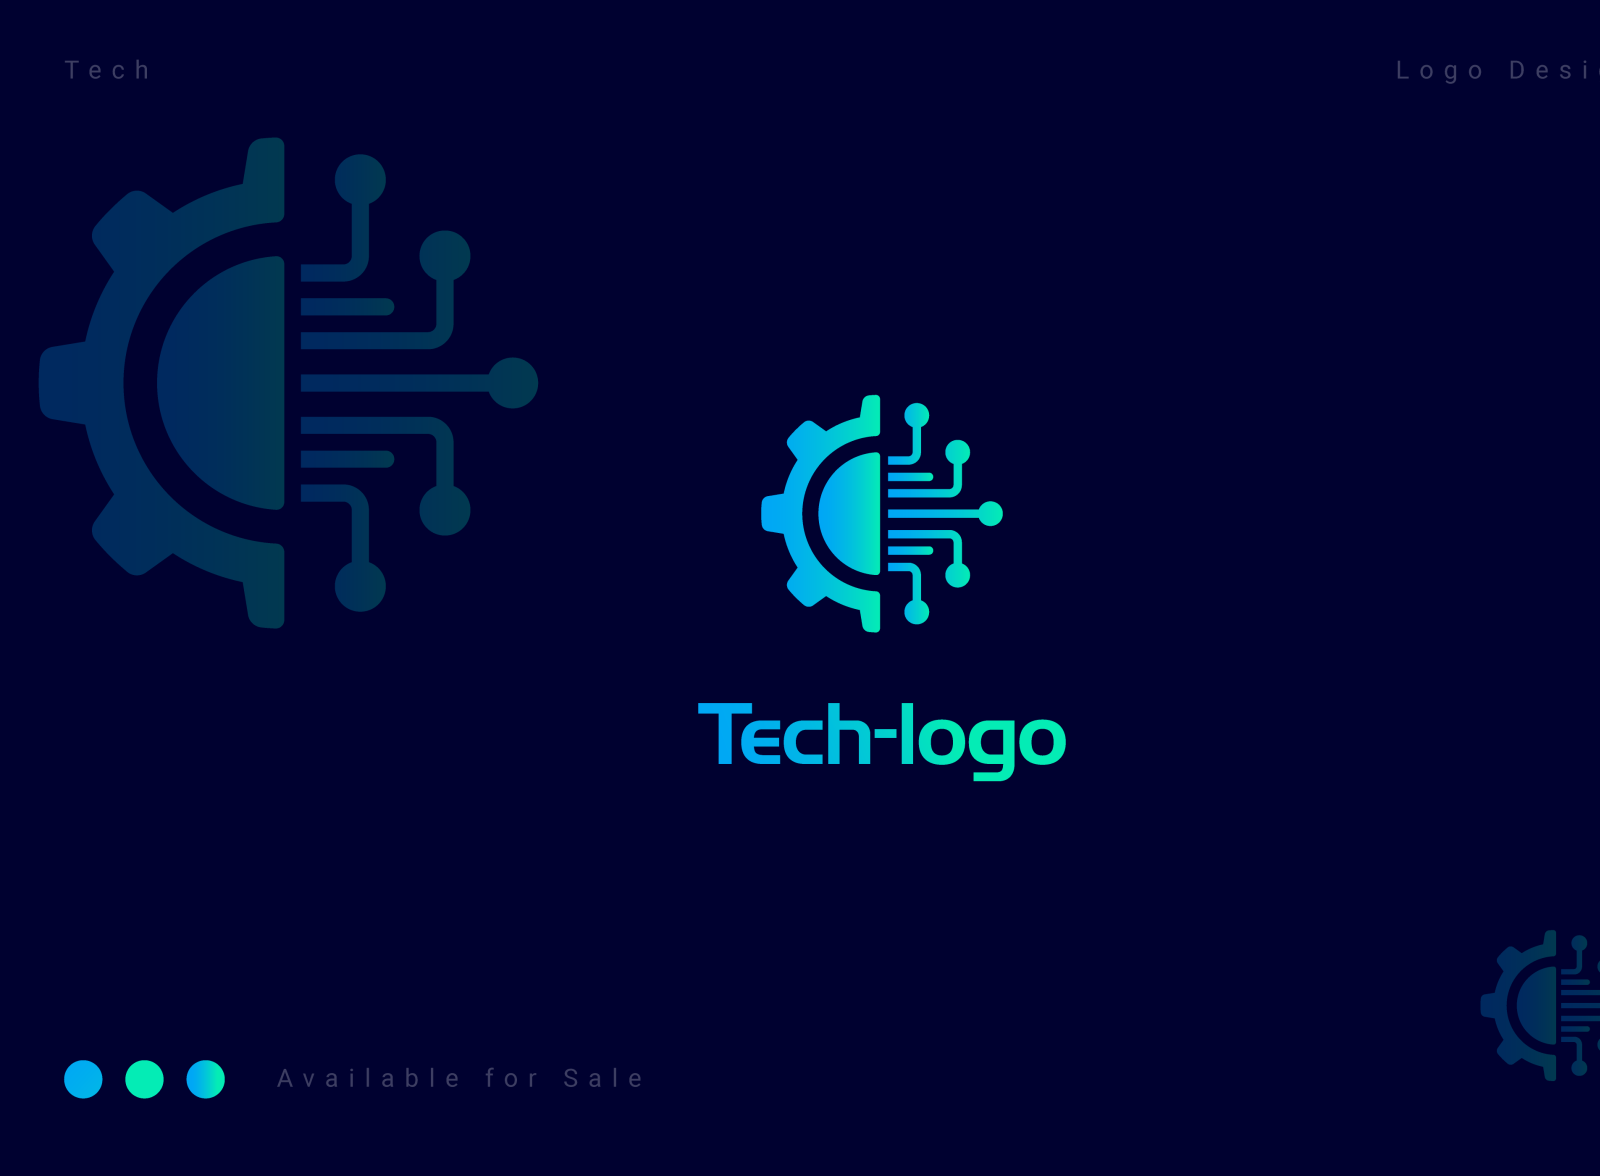 Tech logo by Gfx Rakib on Dribbble